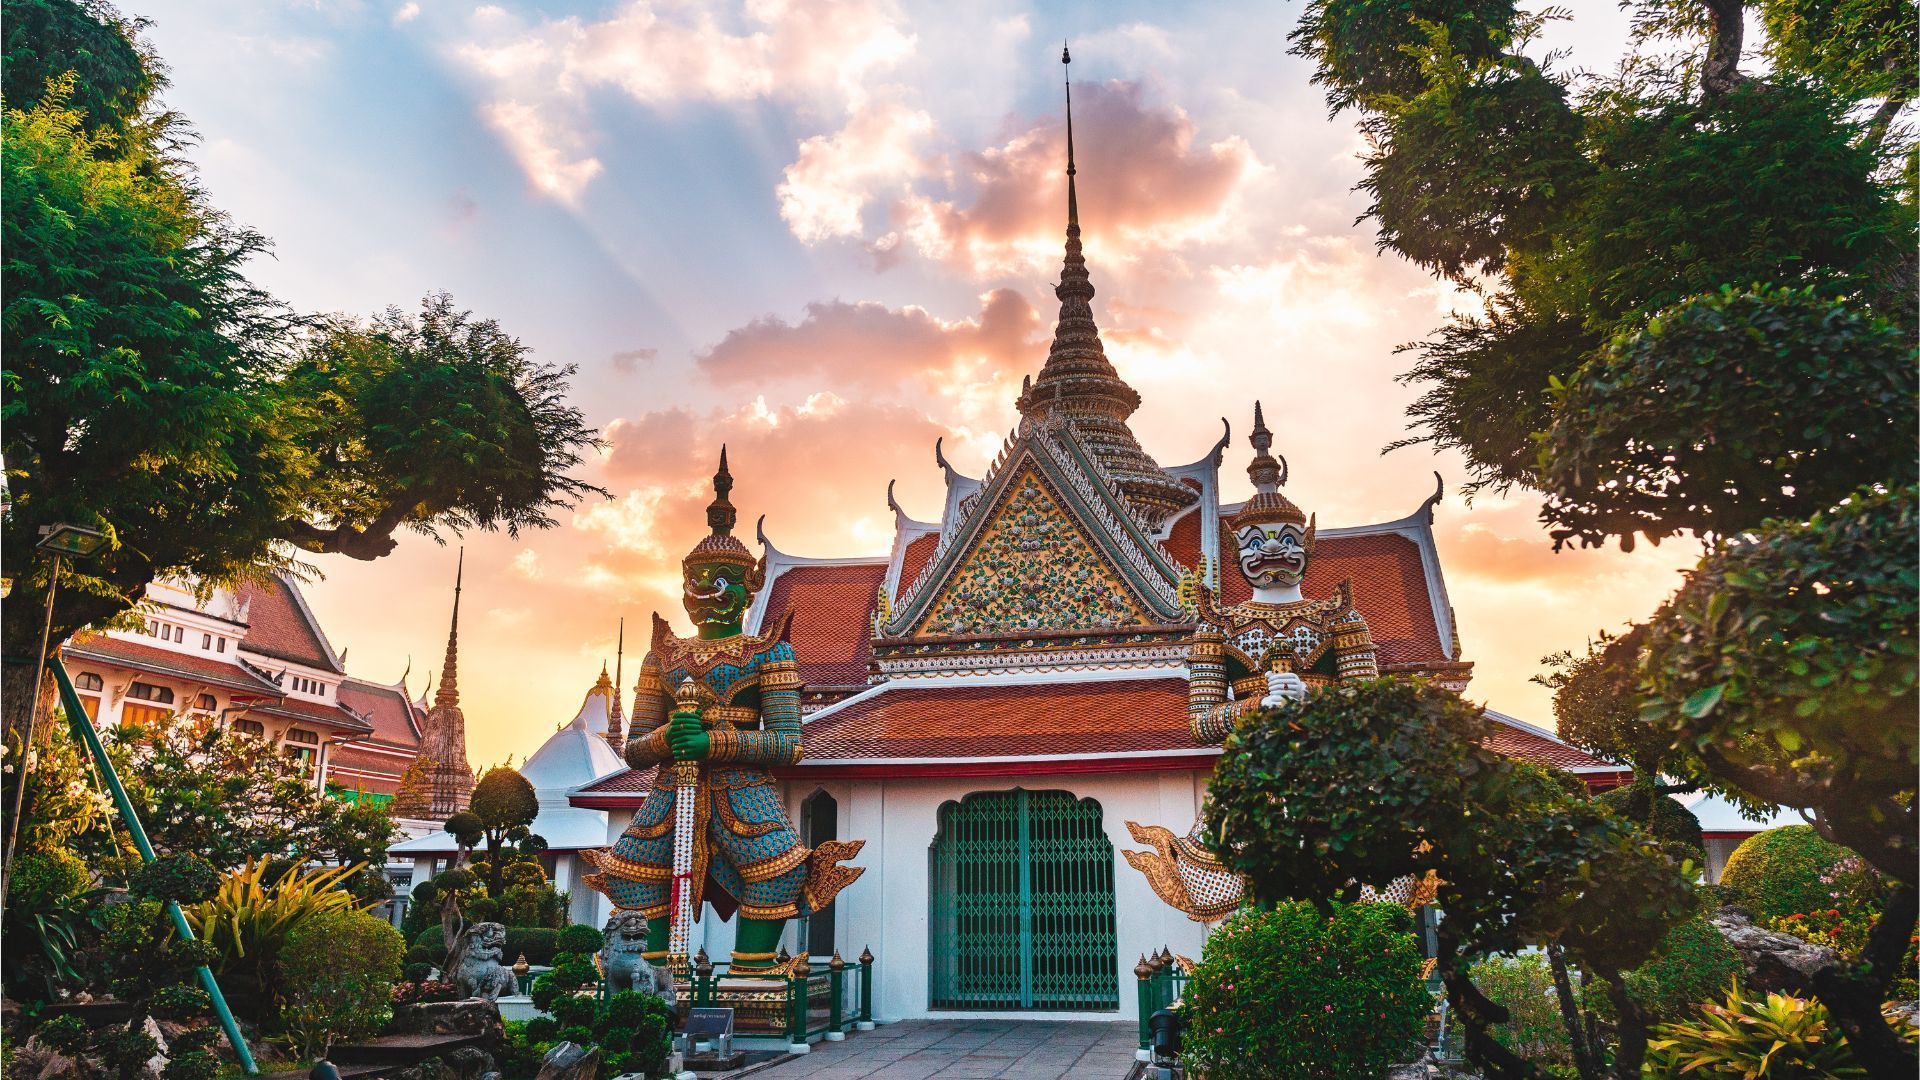 Siam Paragon, Bangkok - Times of India Travel